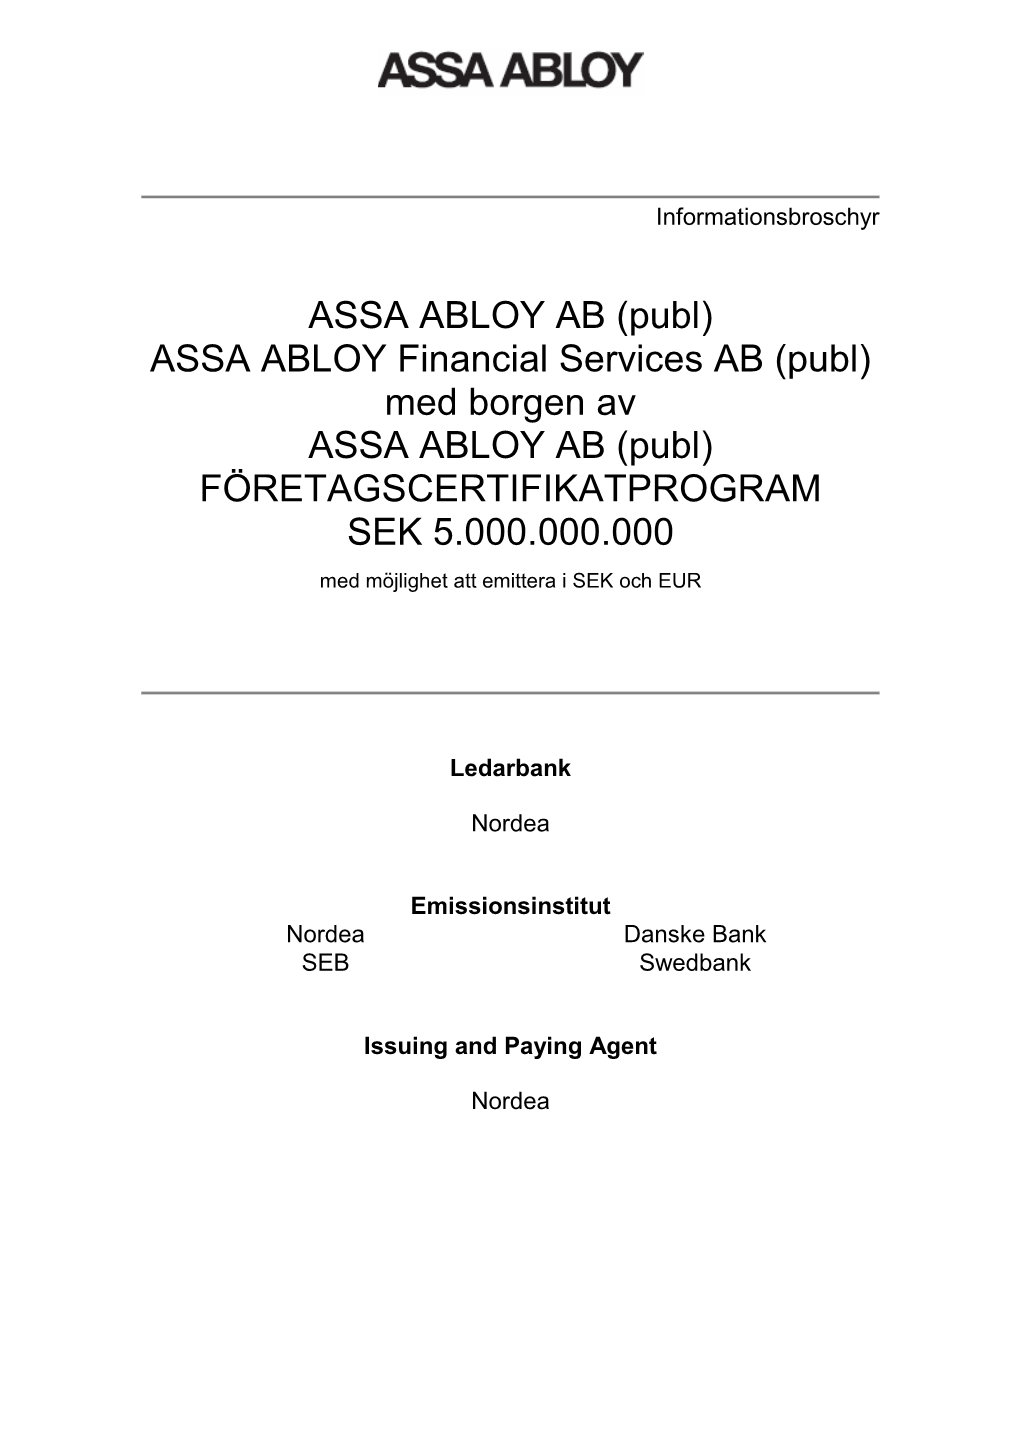 ASSA ABLOY AB (Publ) ASSA ABLOY Financial Services AB (Publ) Med Borgen Av ASSA ABLOY AB (Publ) FÖRETAGSCERTIFIKATPROGRAM SEK 5.000.000.000